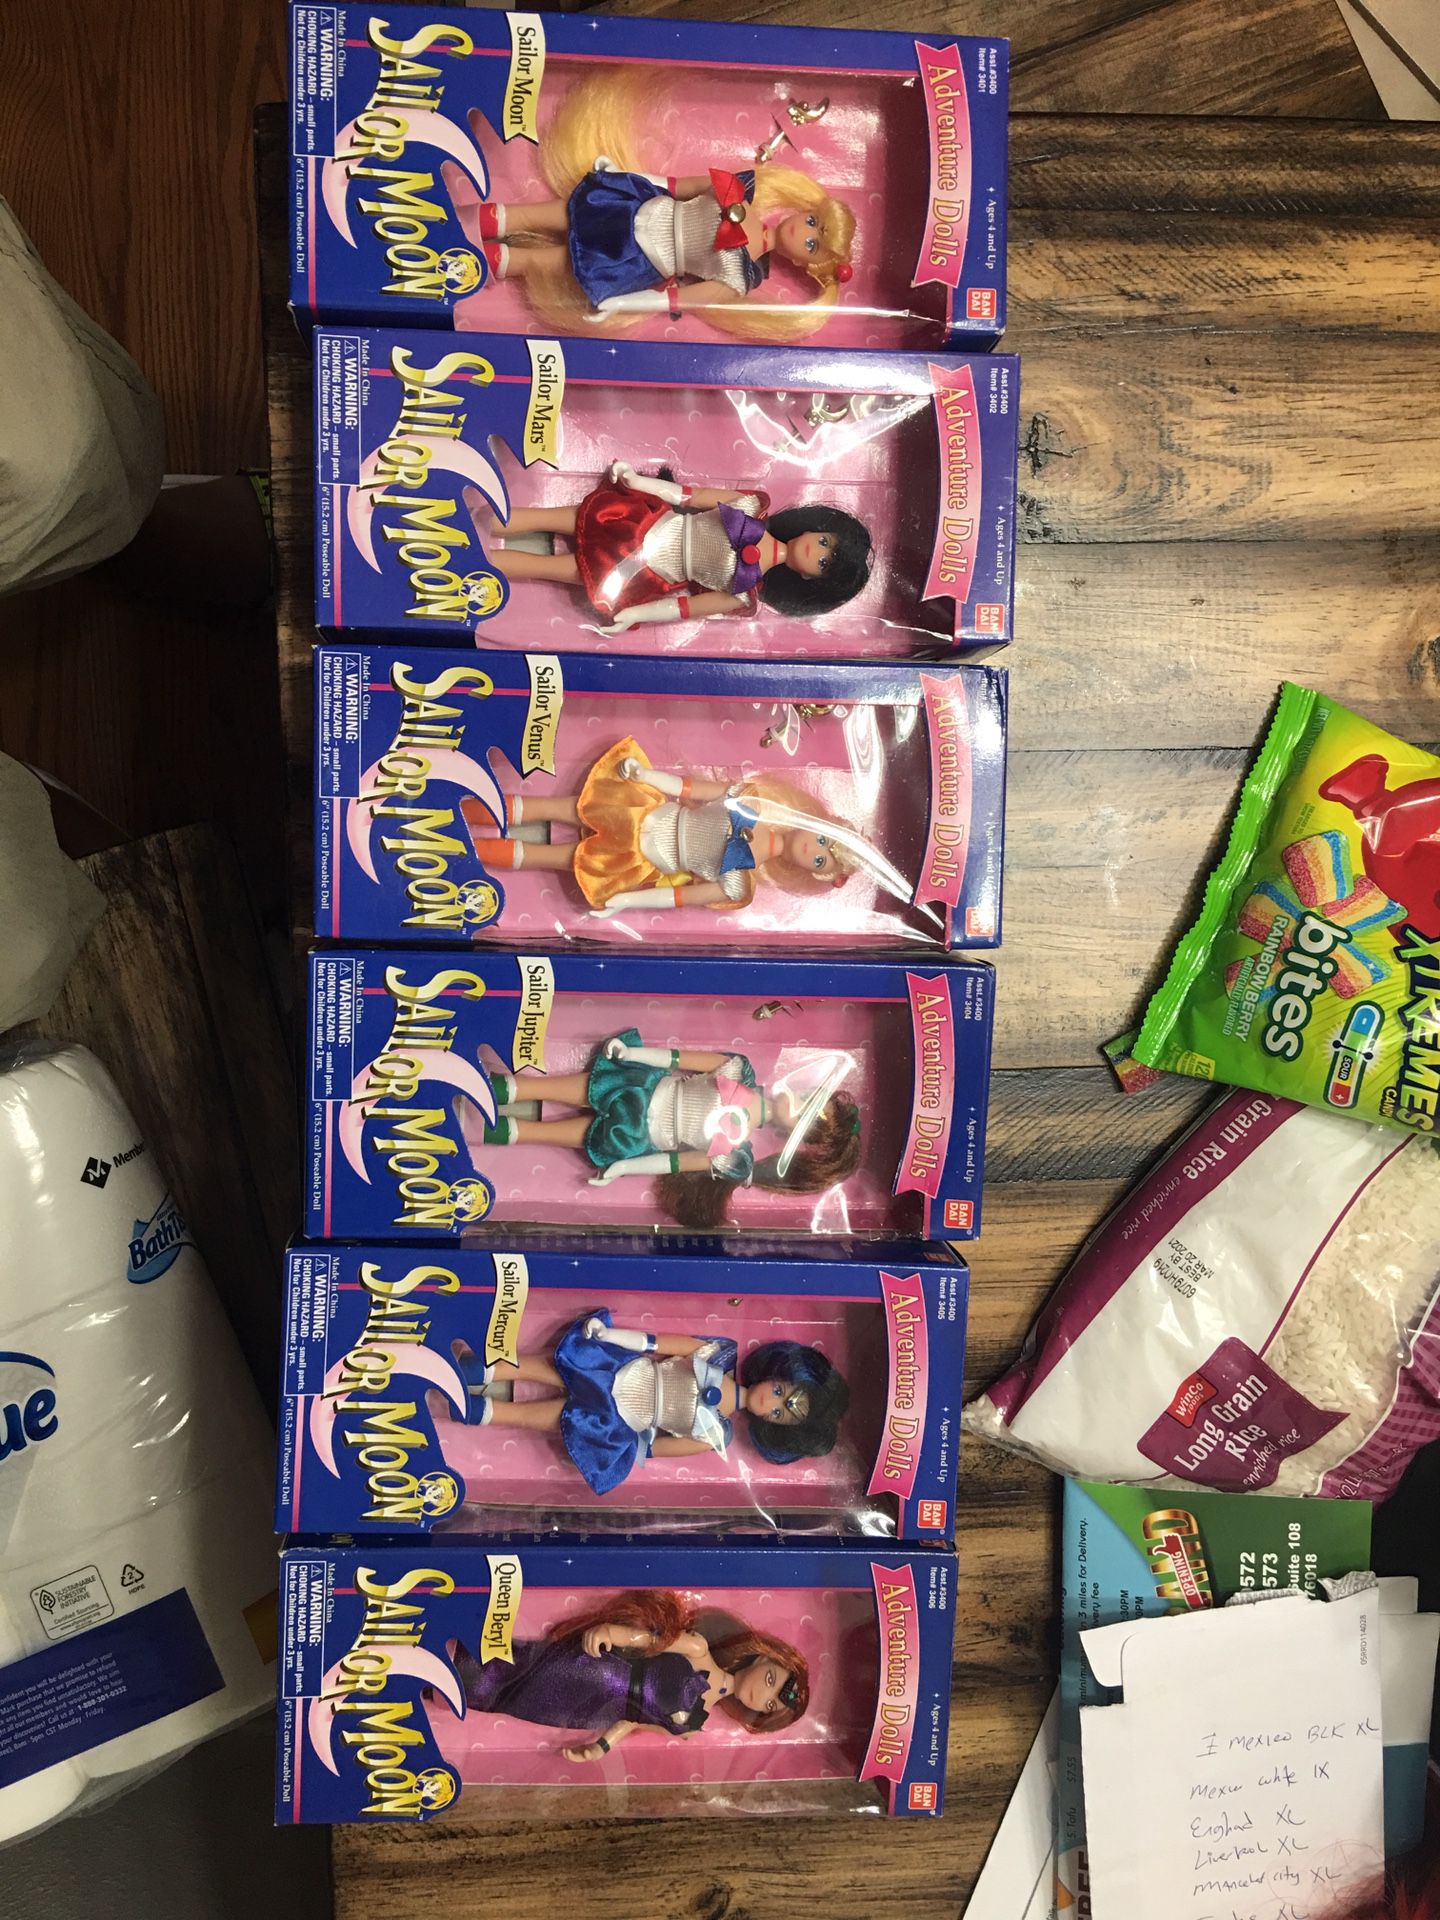 Sailor moon dolls